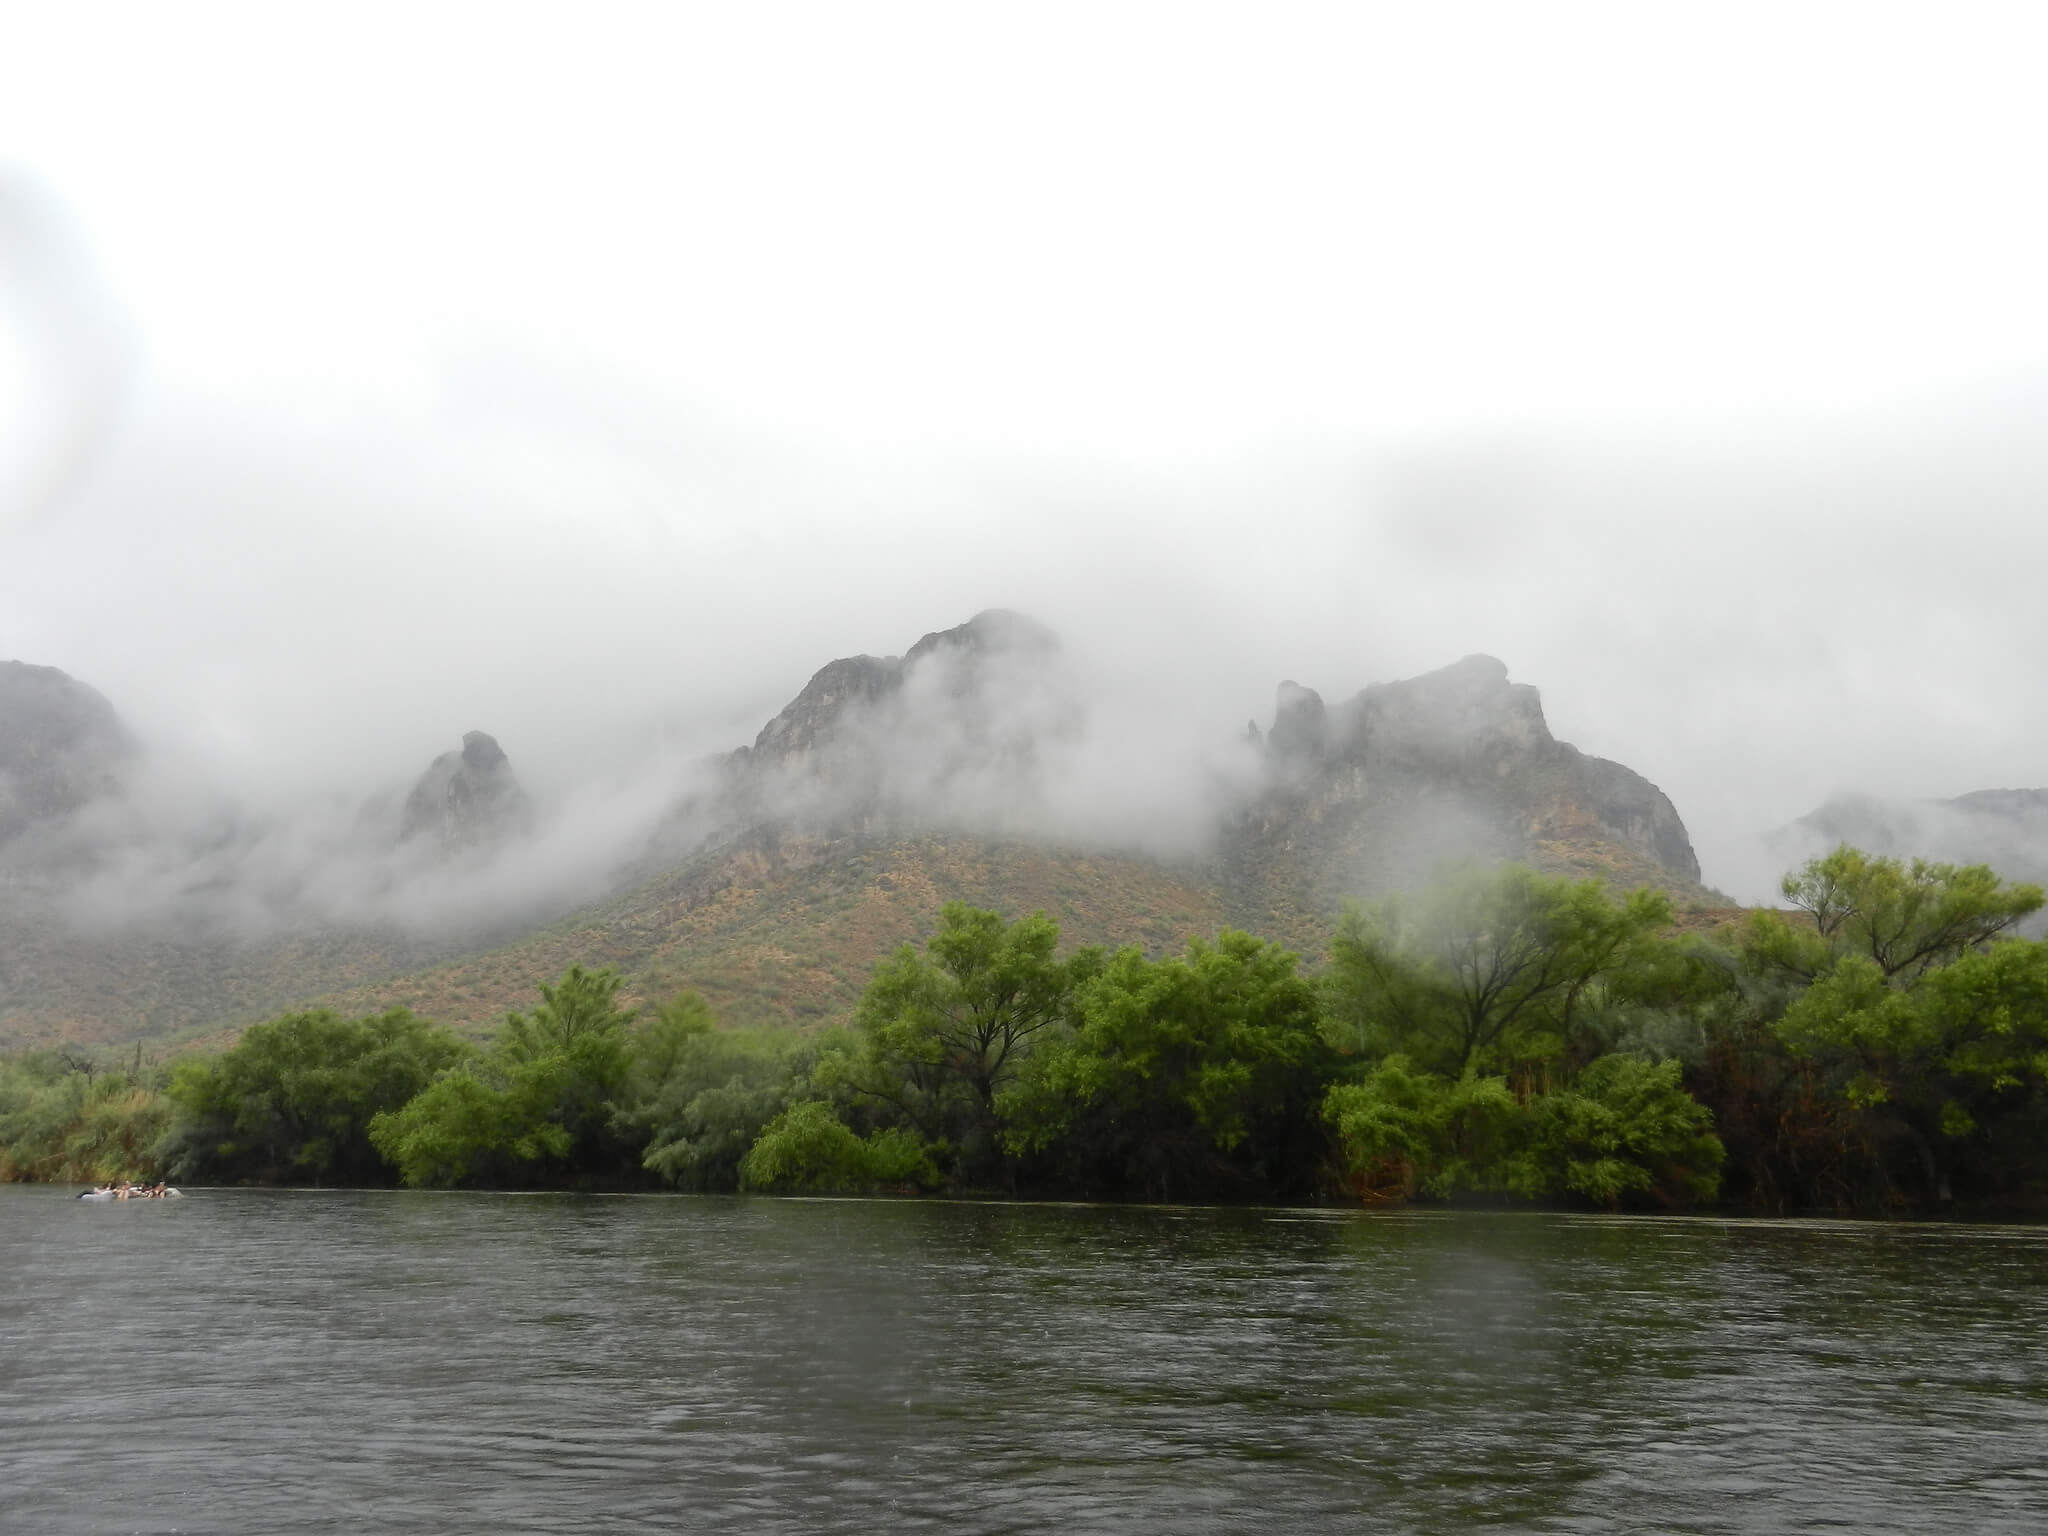 Fog over the river.
Flickr User Jeff Kucharski